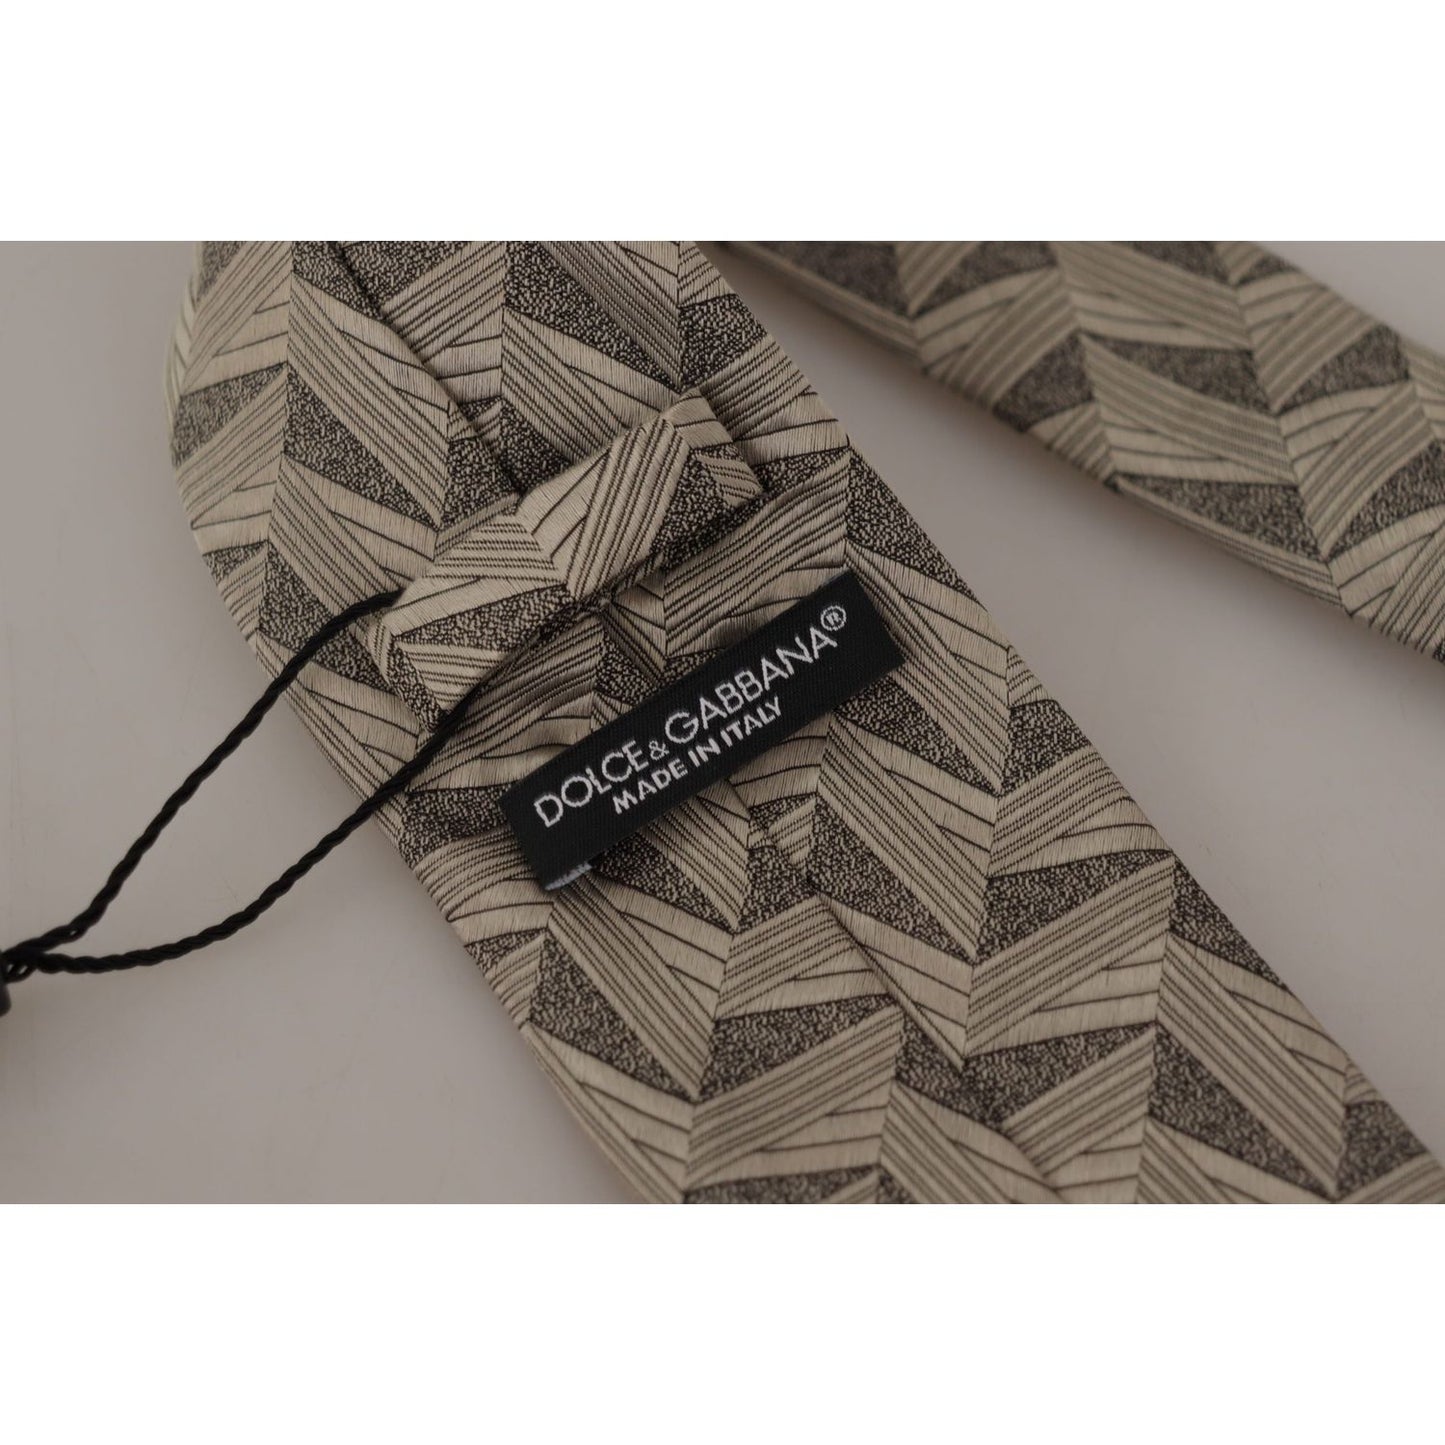 Dolce & Gabbana Stunning Beige Silk Bow Tie beige-fantasy-pattern-adjustable-necktie-accessory-tie IMG_3392-scaled-4a0d38dd-750.jpg